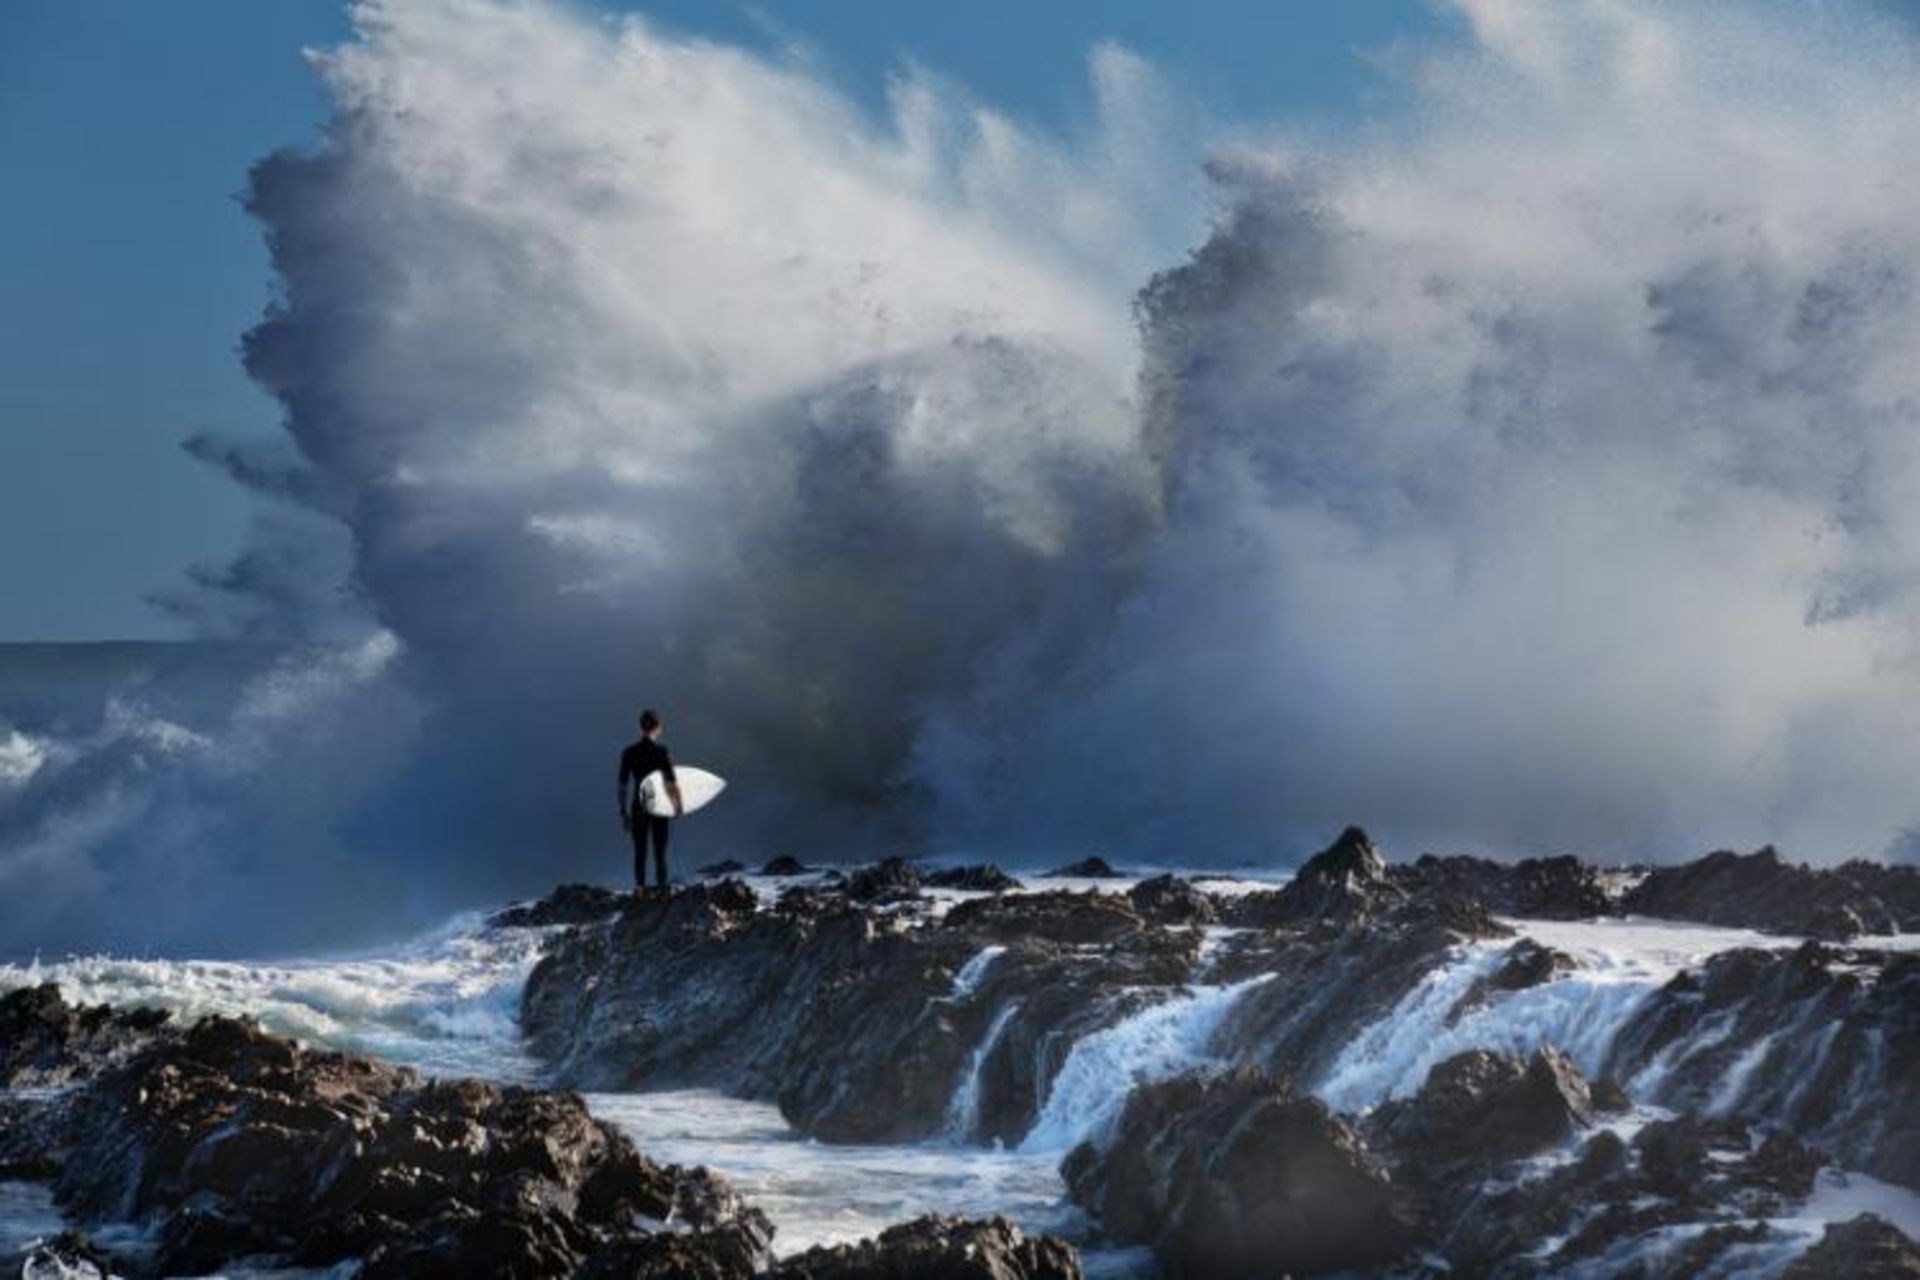 مرجع متخصصين ايران عكس فينالست اندرو ليچ در مسابقه 2020  Surf Photo Nikon Australia